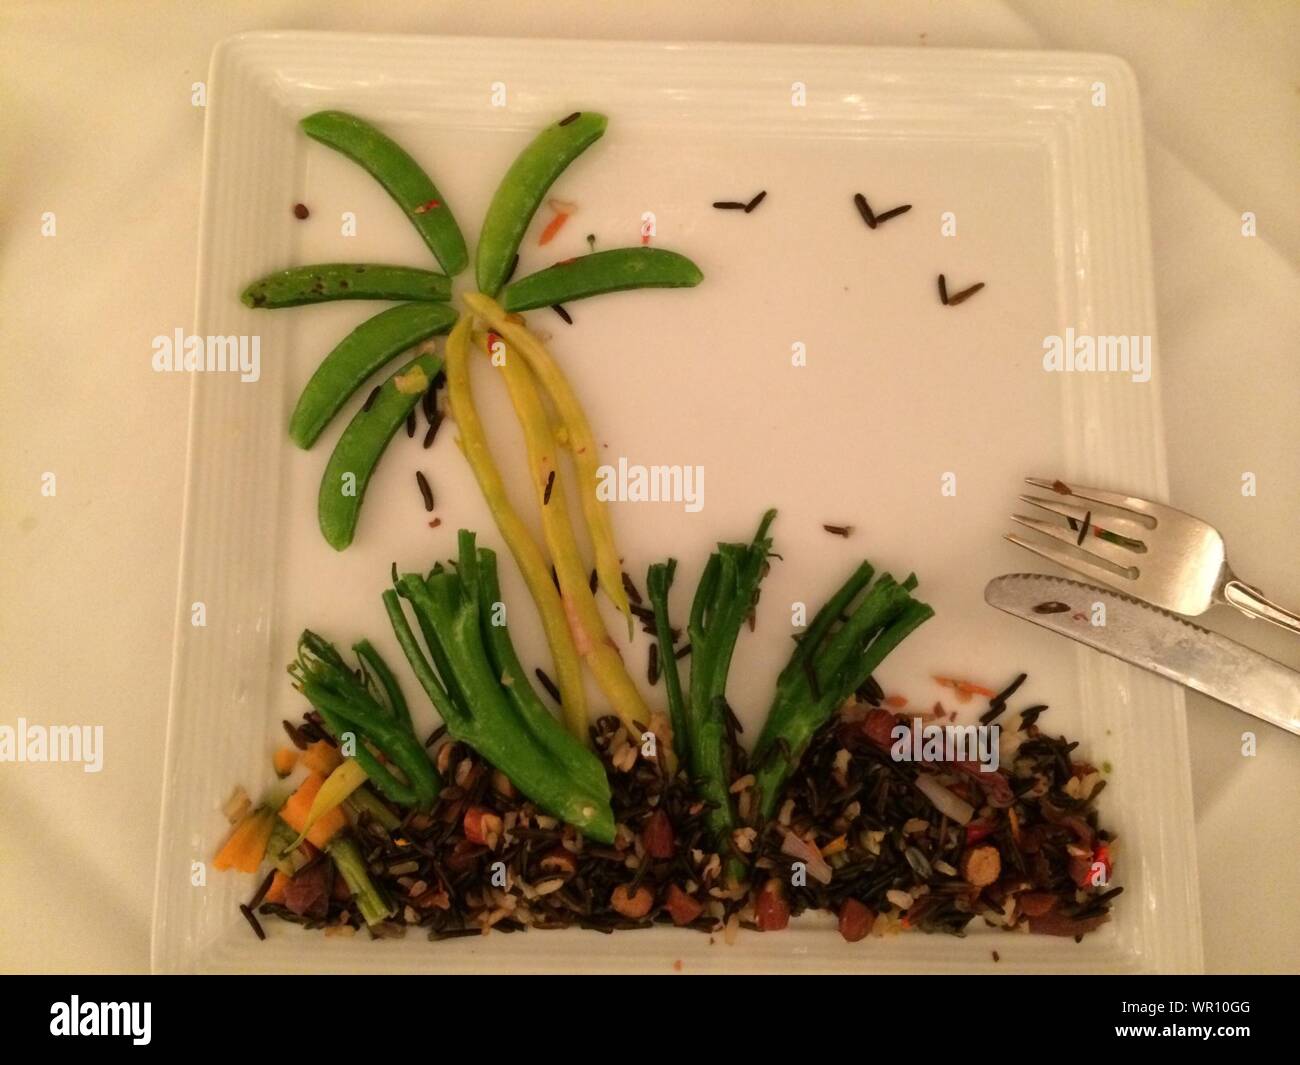 Las verduras en la placa dispuestos como Isla tropical Foto de stock